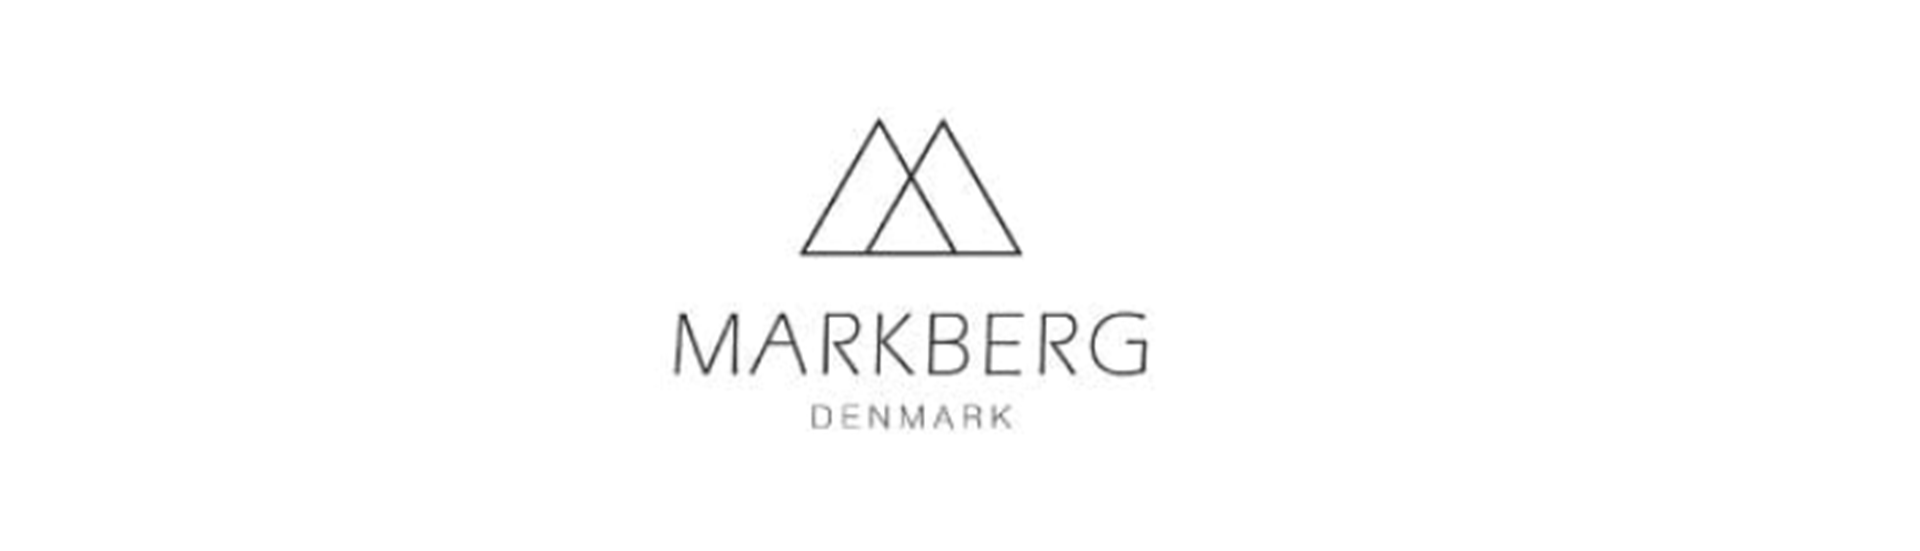 markberg logo 3.png